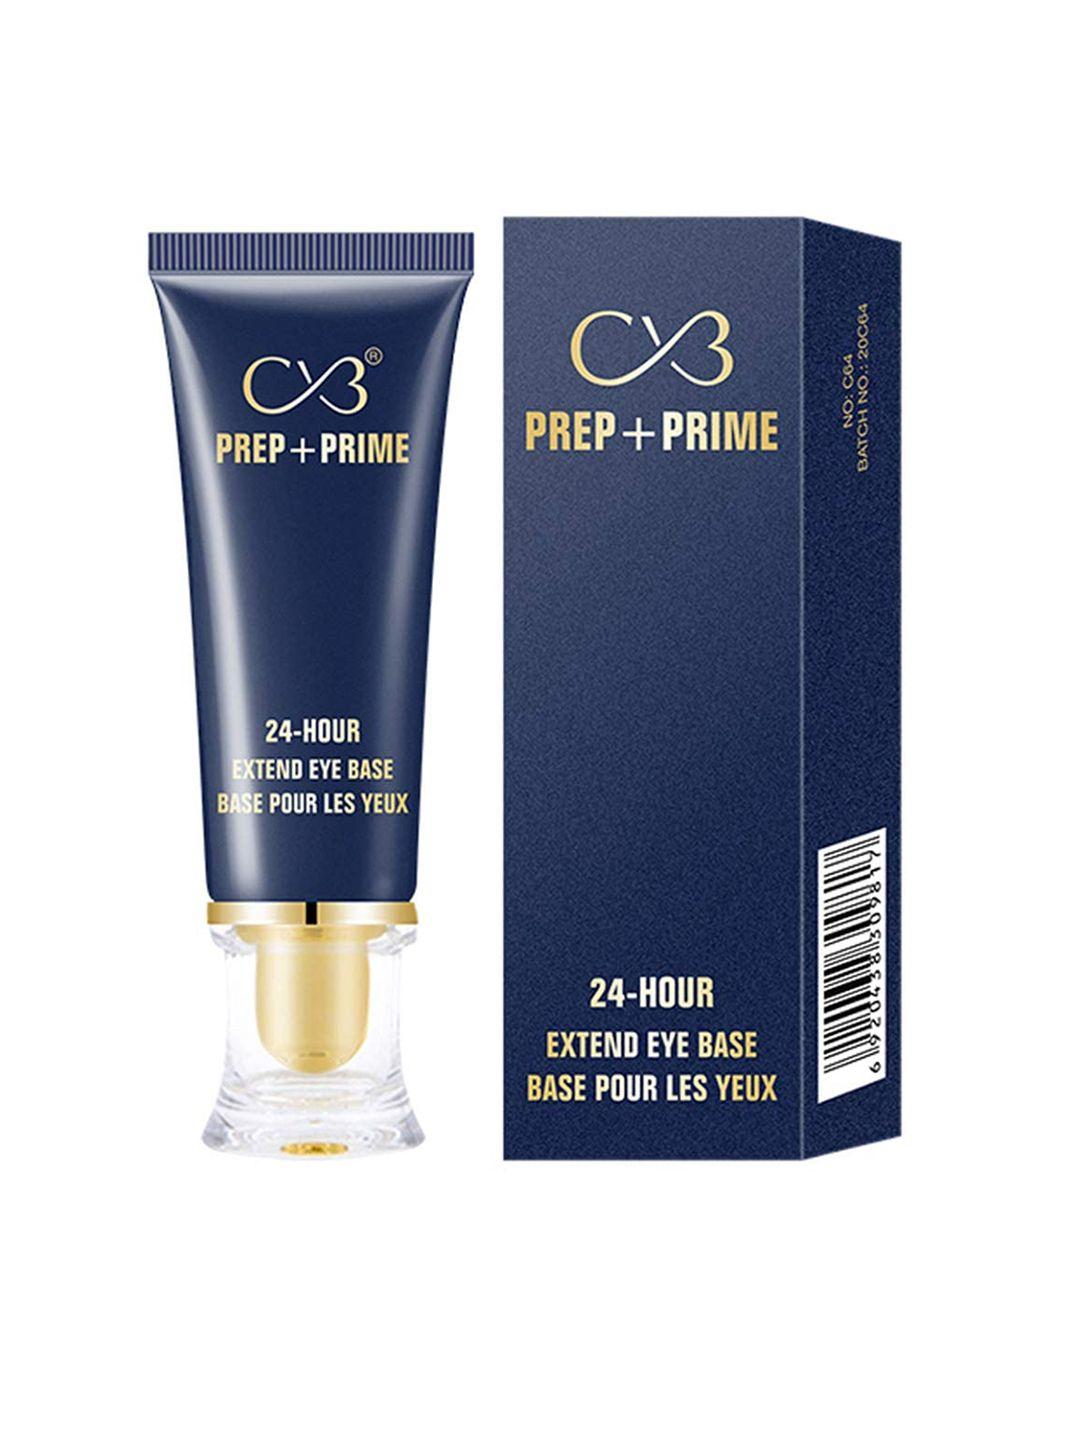 cvb prep + prime 24 hours extended eye base - 30 ml